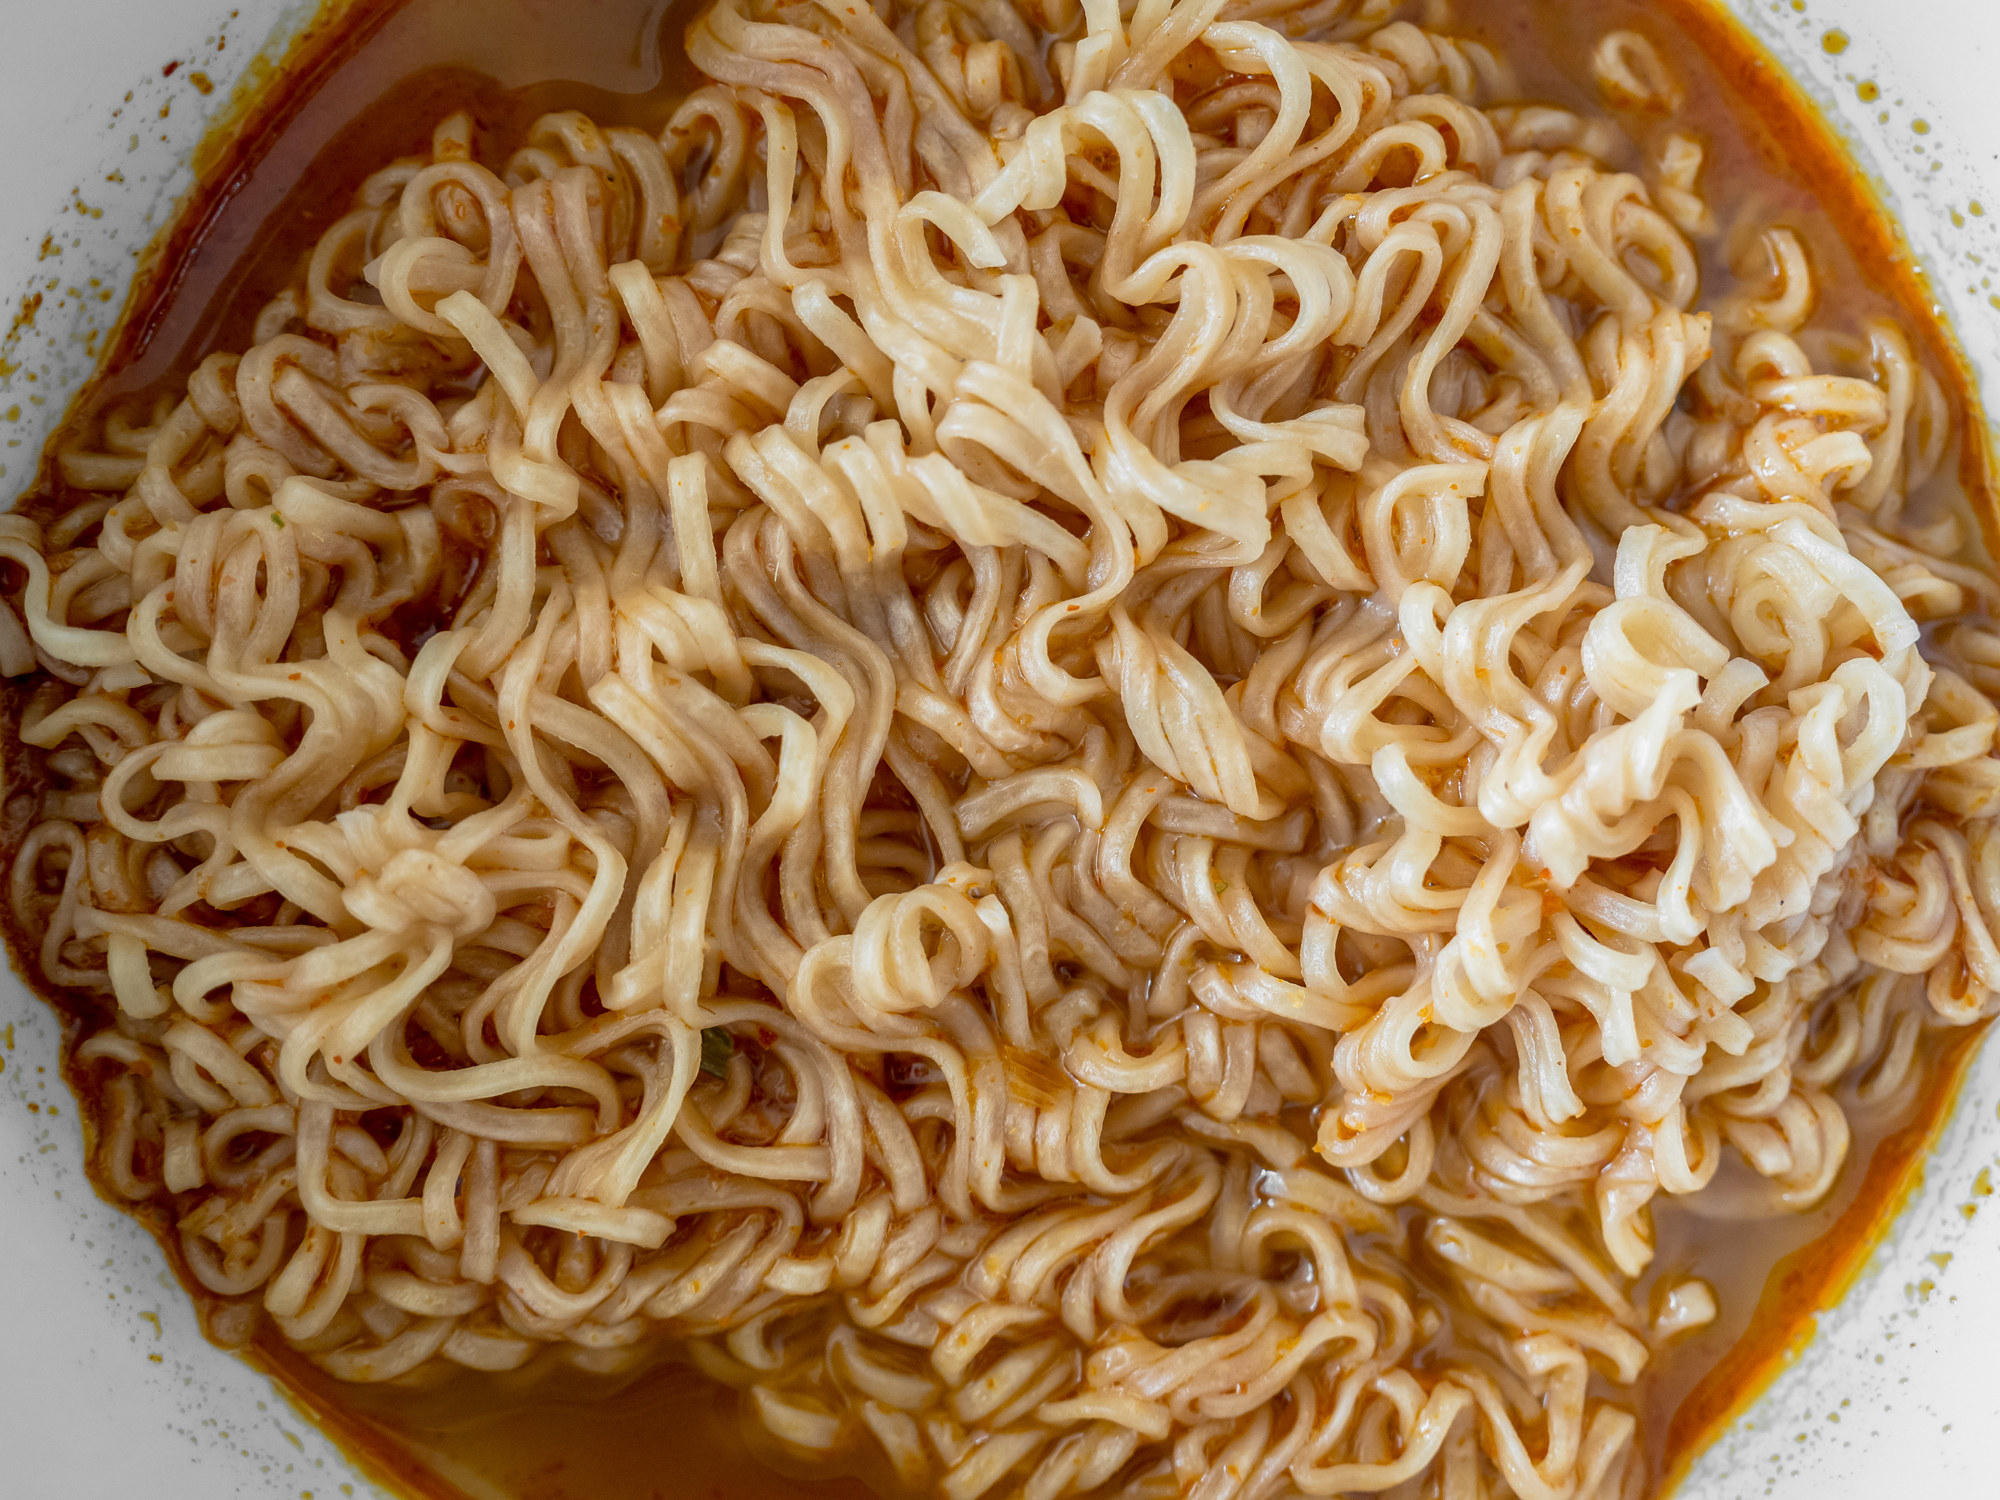 Instant ramen noodle soup.